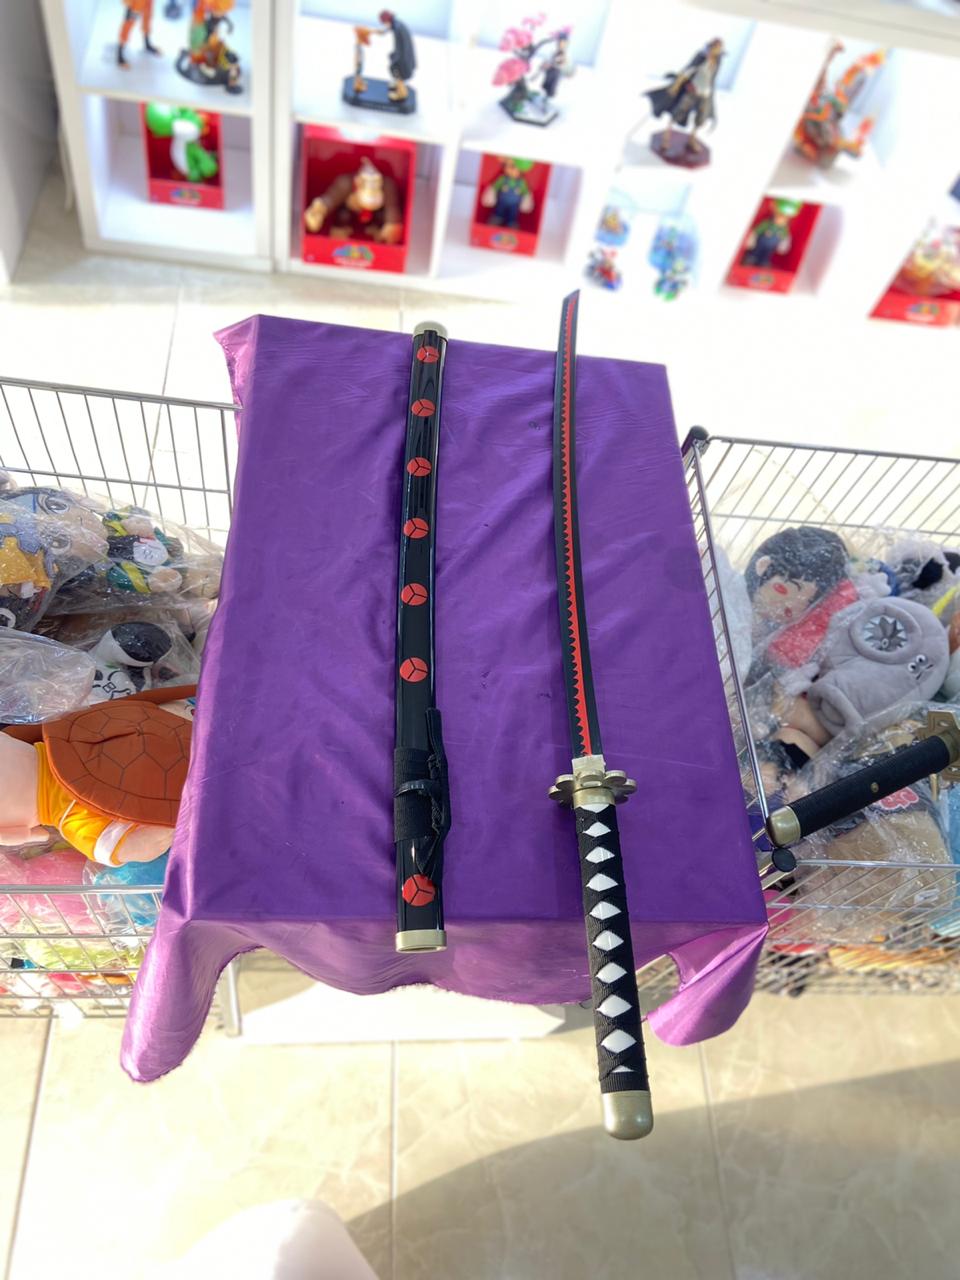 One Piece Roronoa Zoro sword